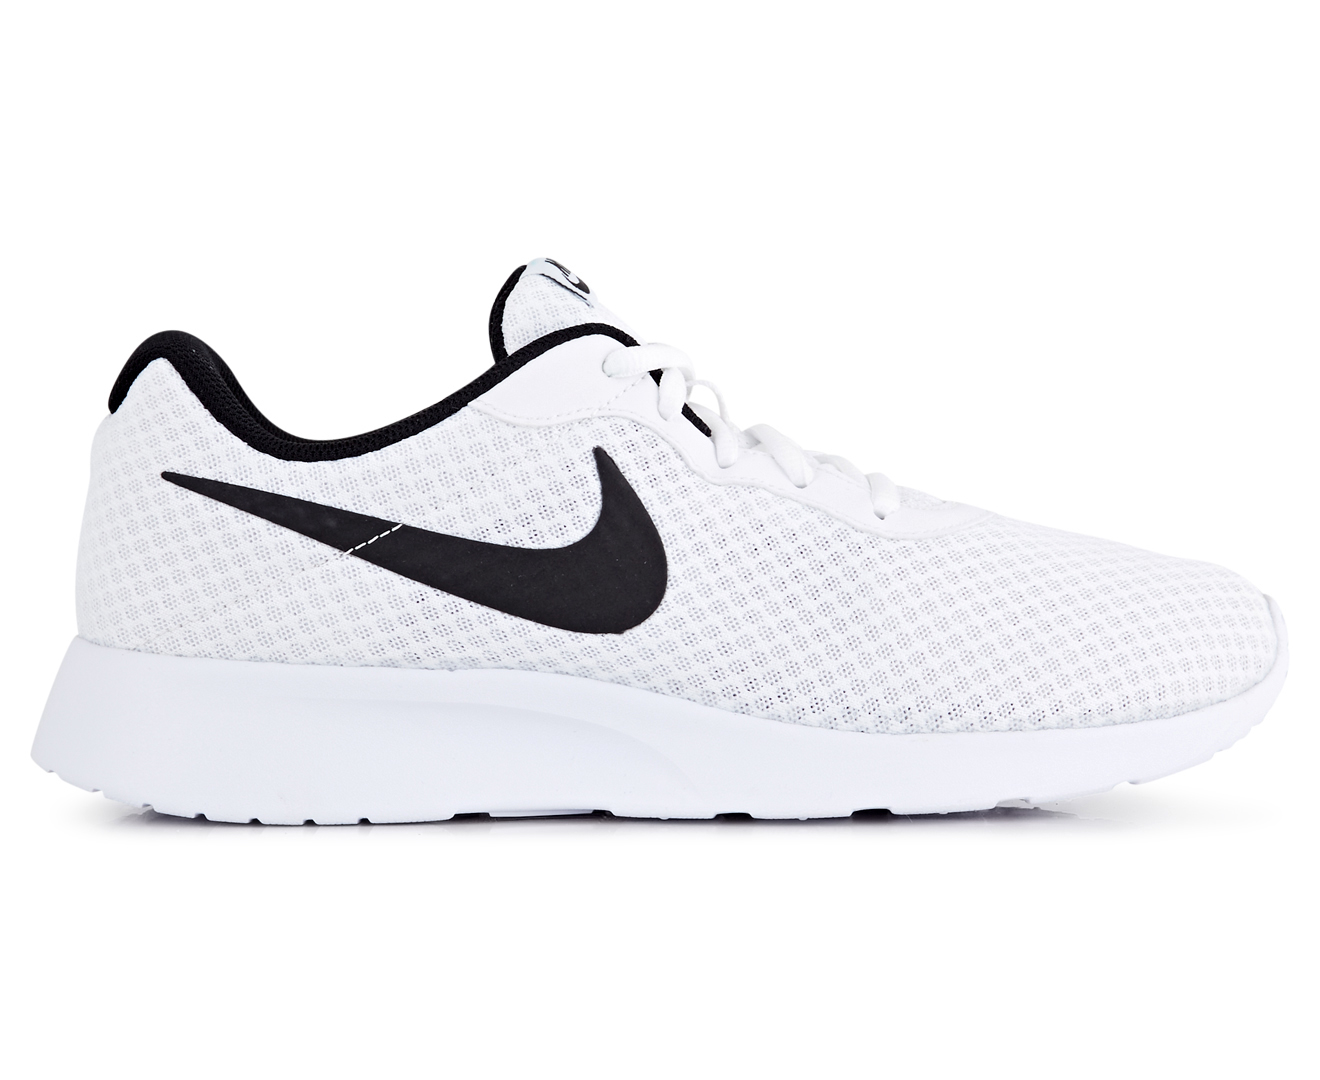 Nike Men's Tanjun Shoe - White/Black | Catch.co.nz